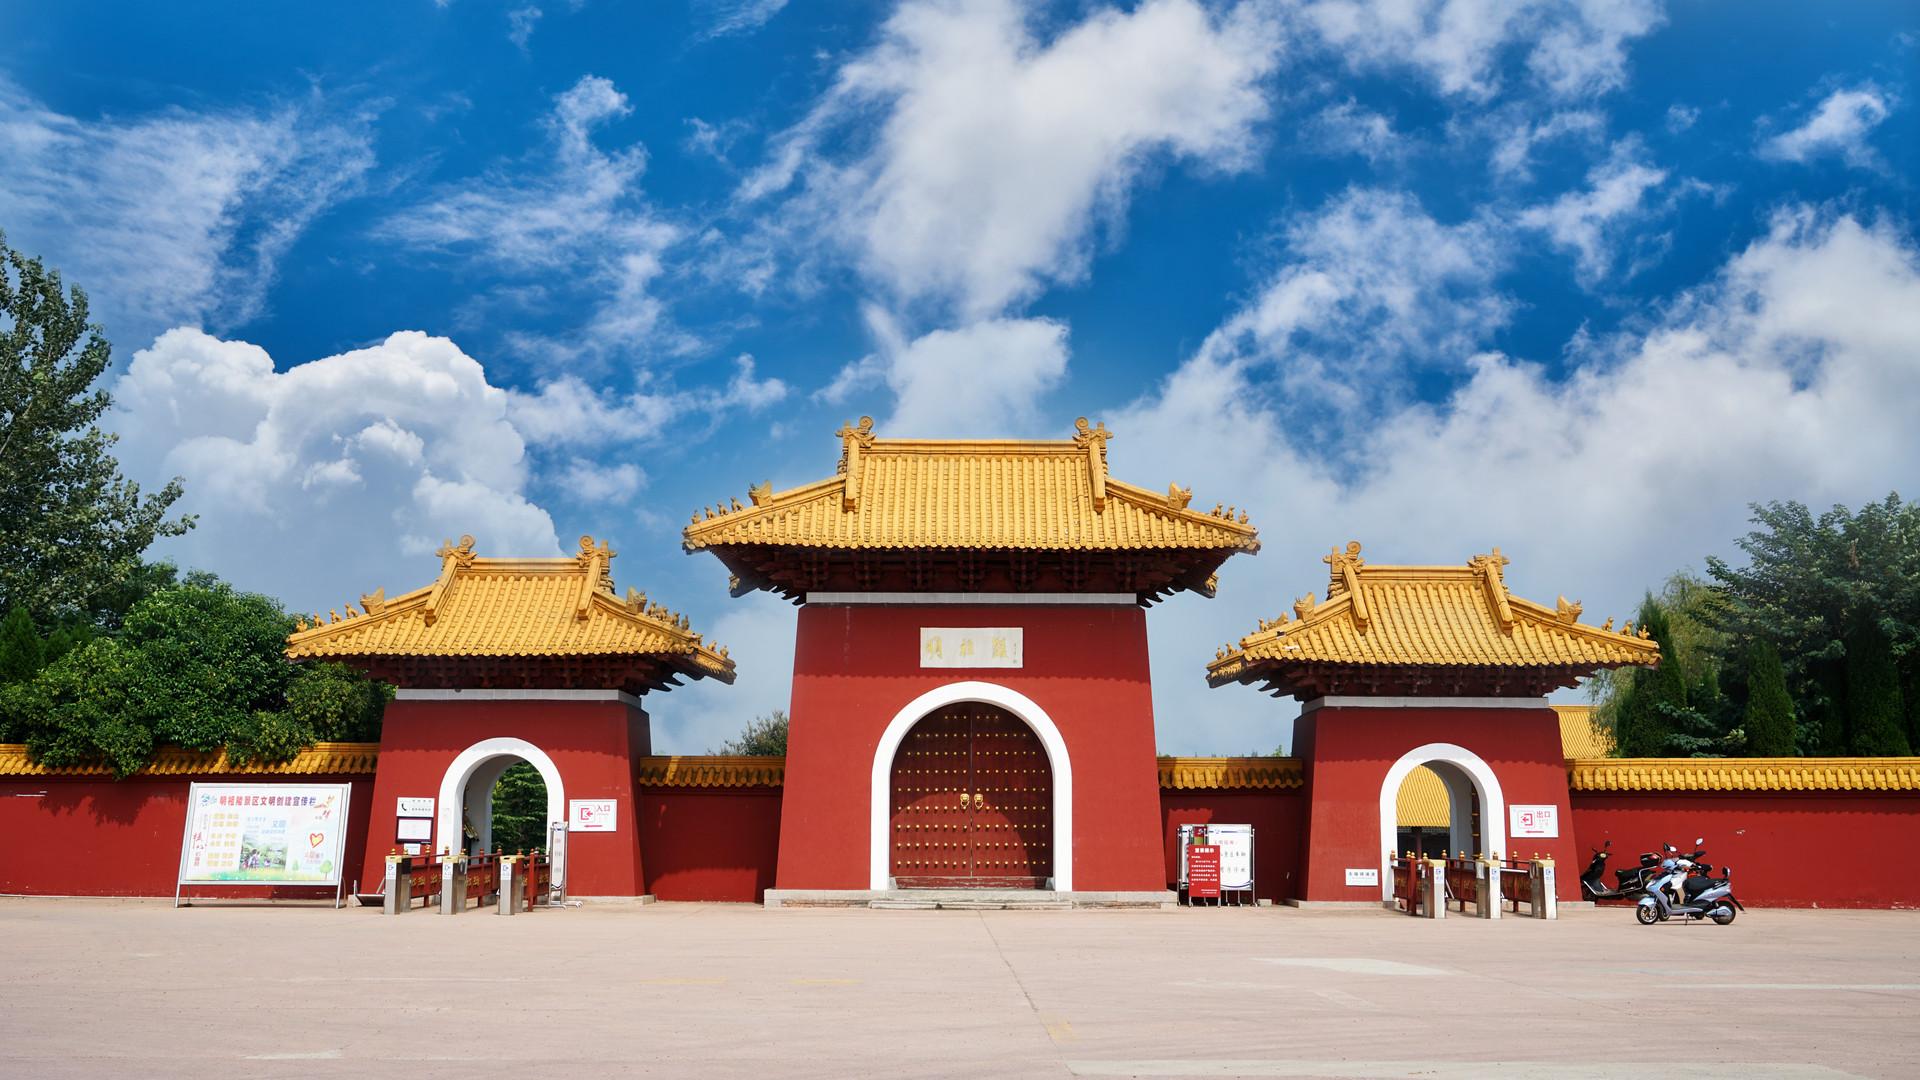 许多跟朱元璋相关的古迹,如凤阳城里的鼓楼,明中都遗址,以及明皇陵等